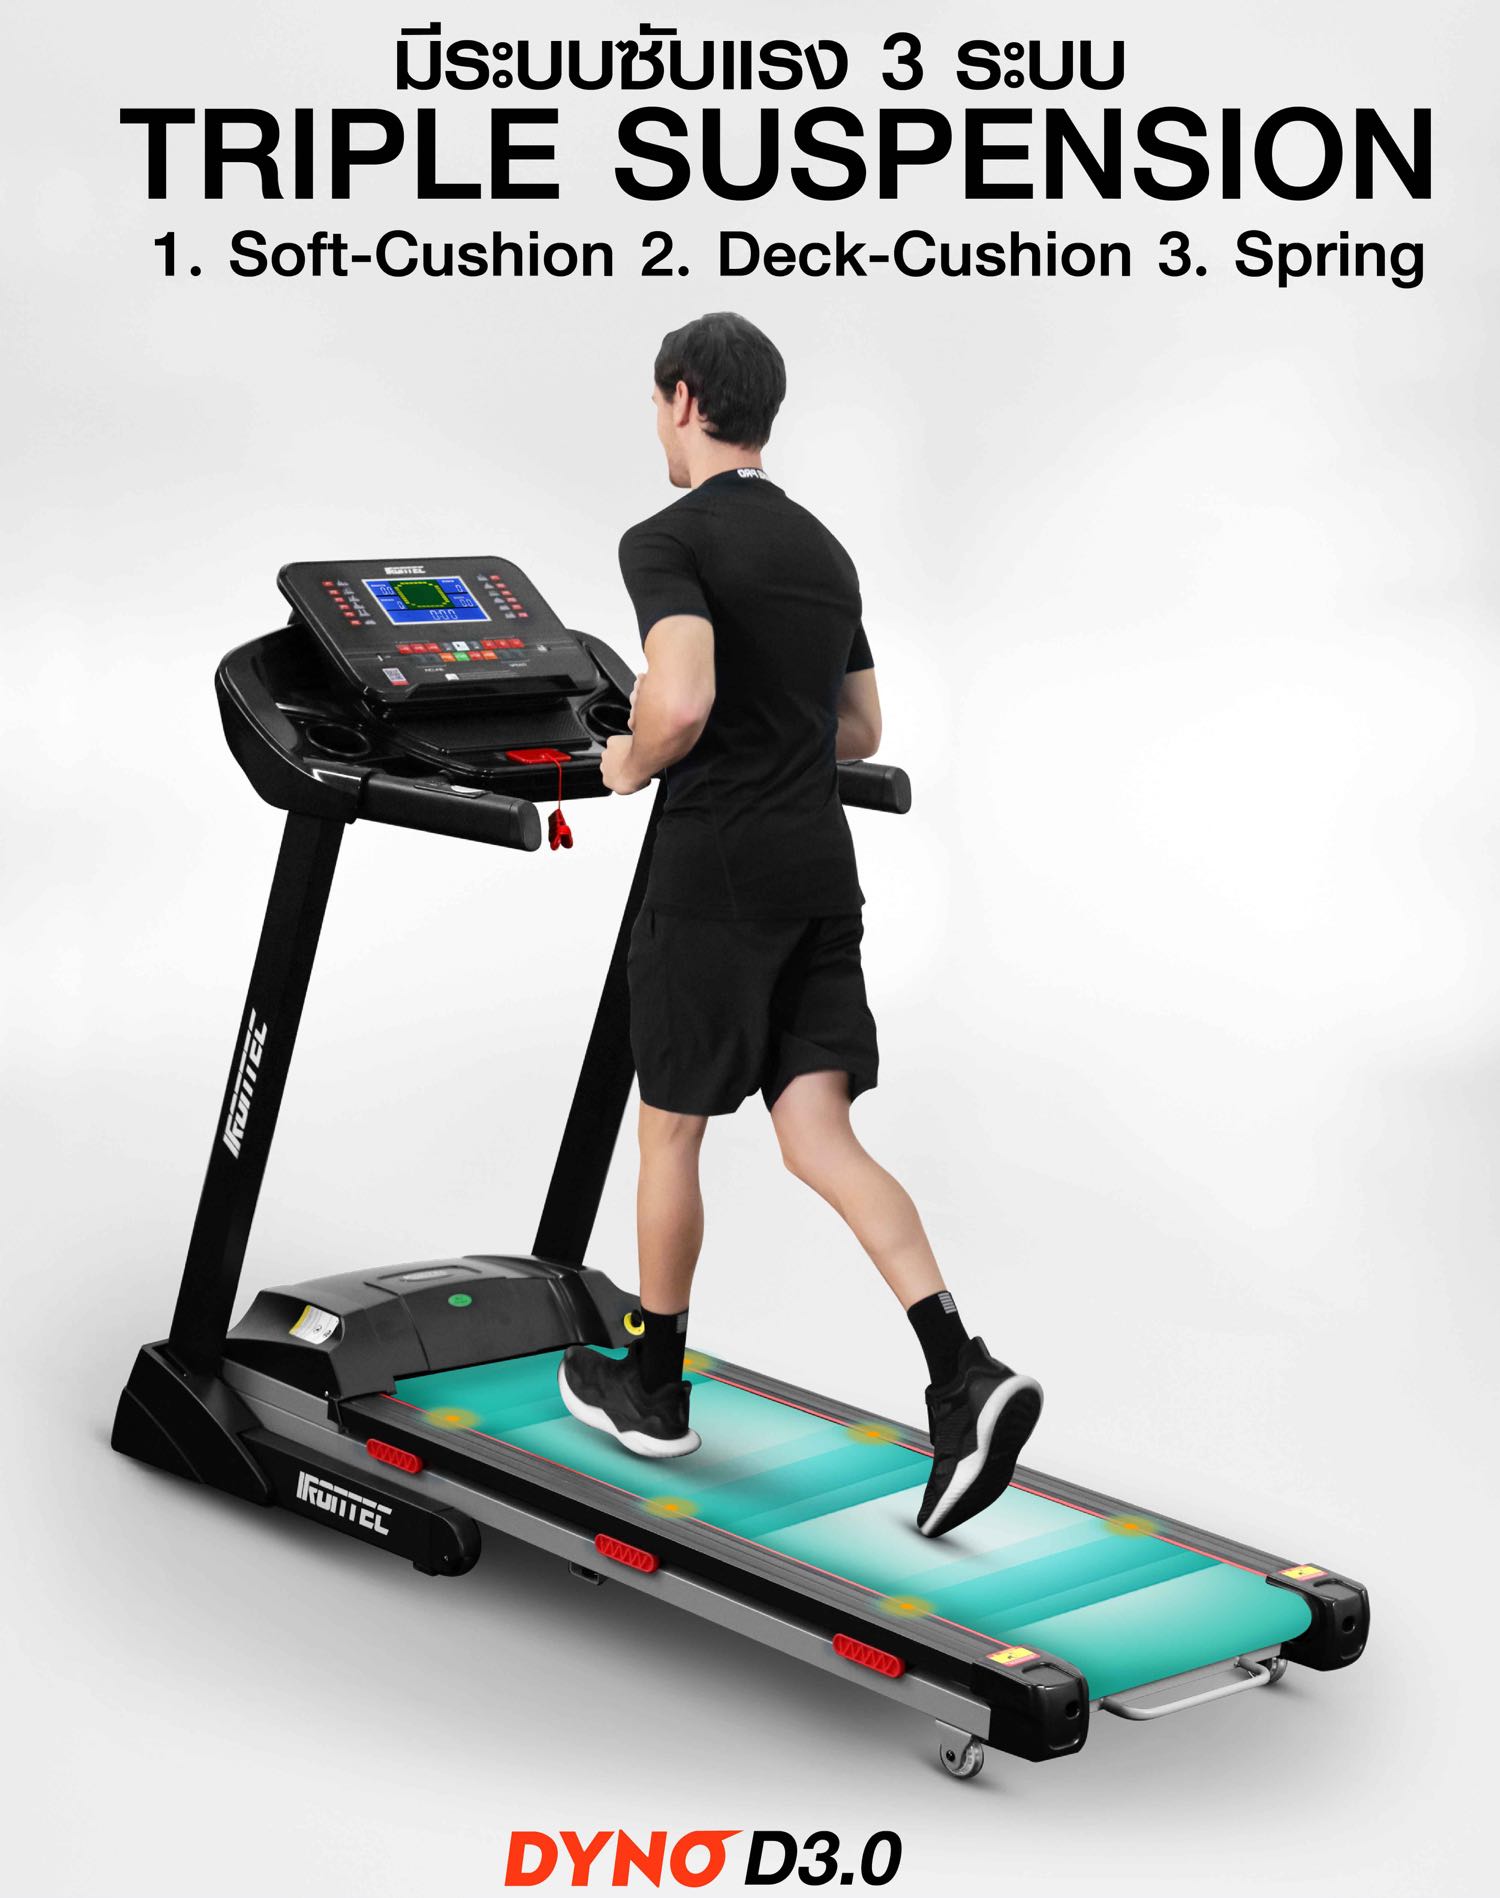 treadmill-dyno-d3-x21